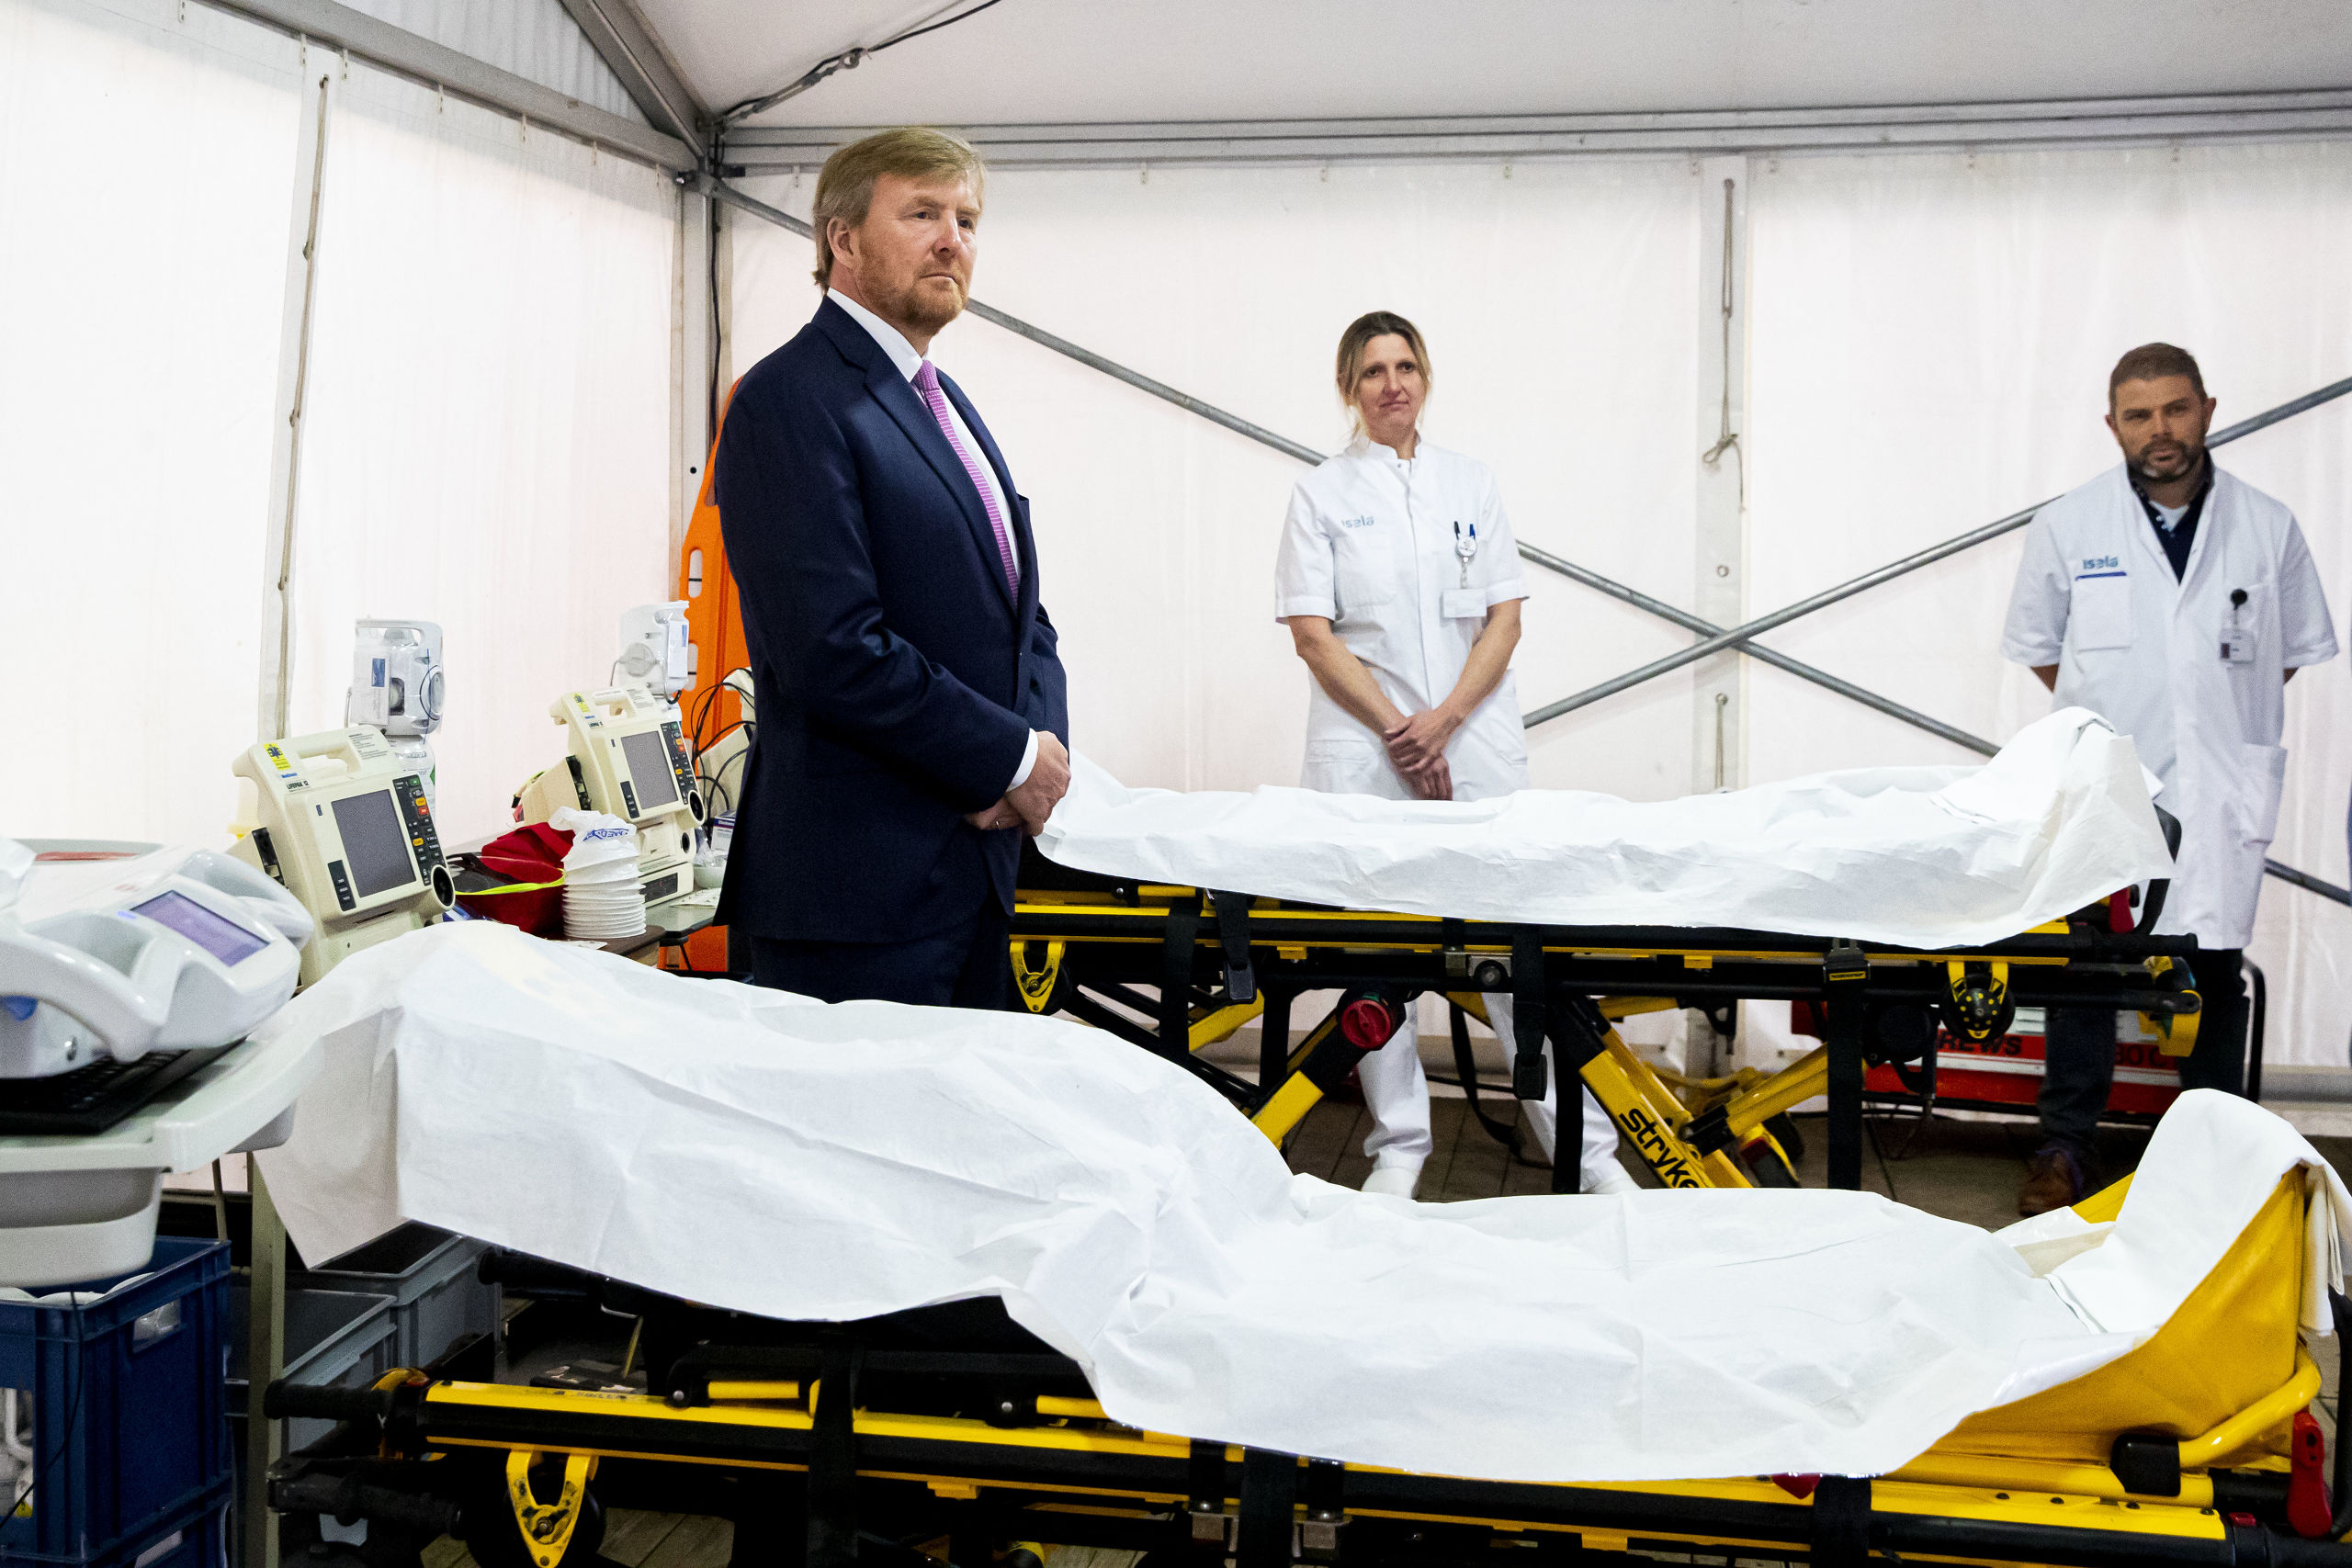 Koning Willem-Alexander bezocht vrijdag het Isala ziekenhuis in Zwolle. De koning laat zich informeren over de opvang en behandeling van patienten die besmet zijn met het coronavirus. 